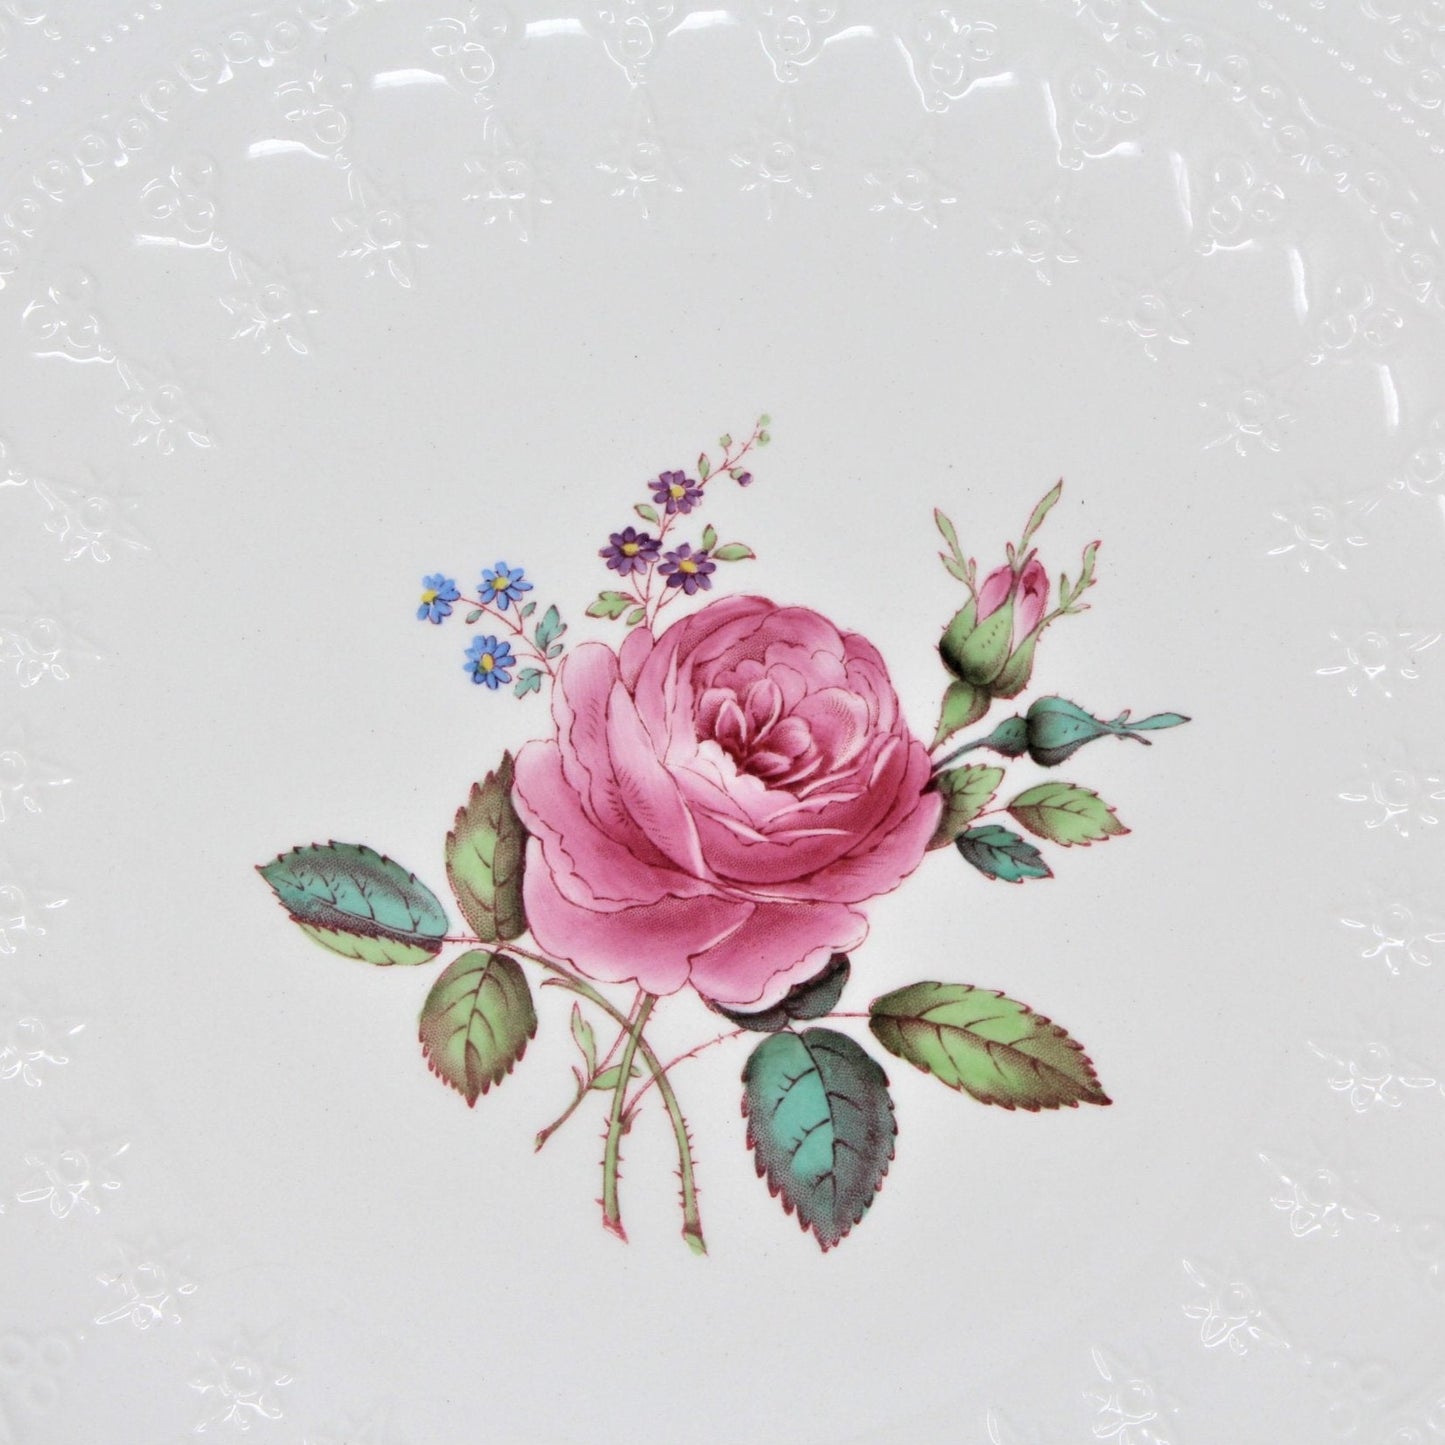 Dinner Plate, Spode Copeland, Billingsley Rose, Earthenware, Vintage 1946